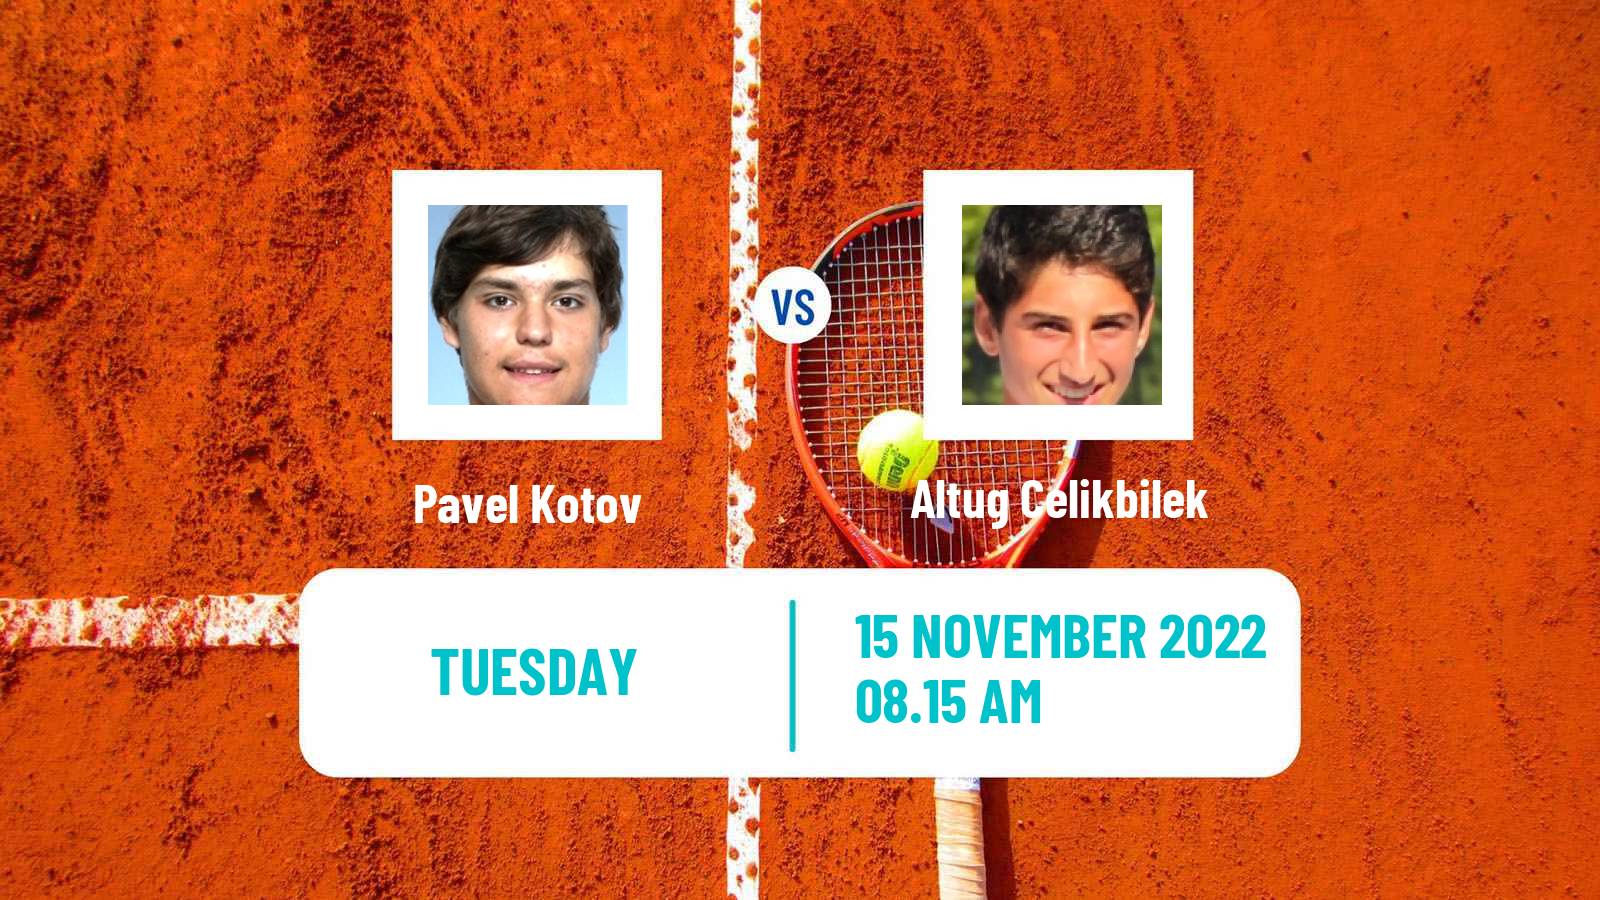 Tennis ATP Challenger Pavel Kotov - Altug Celikbilek